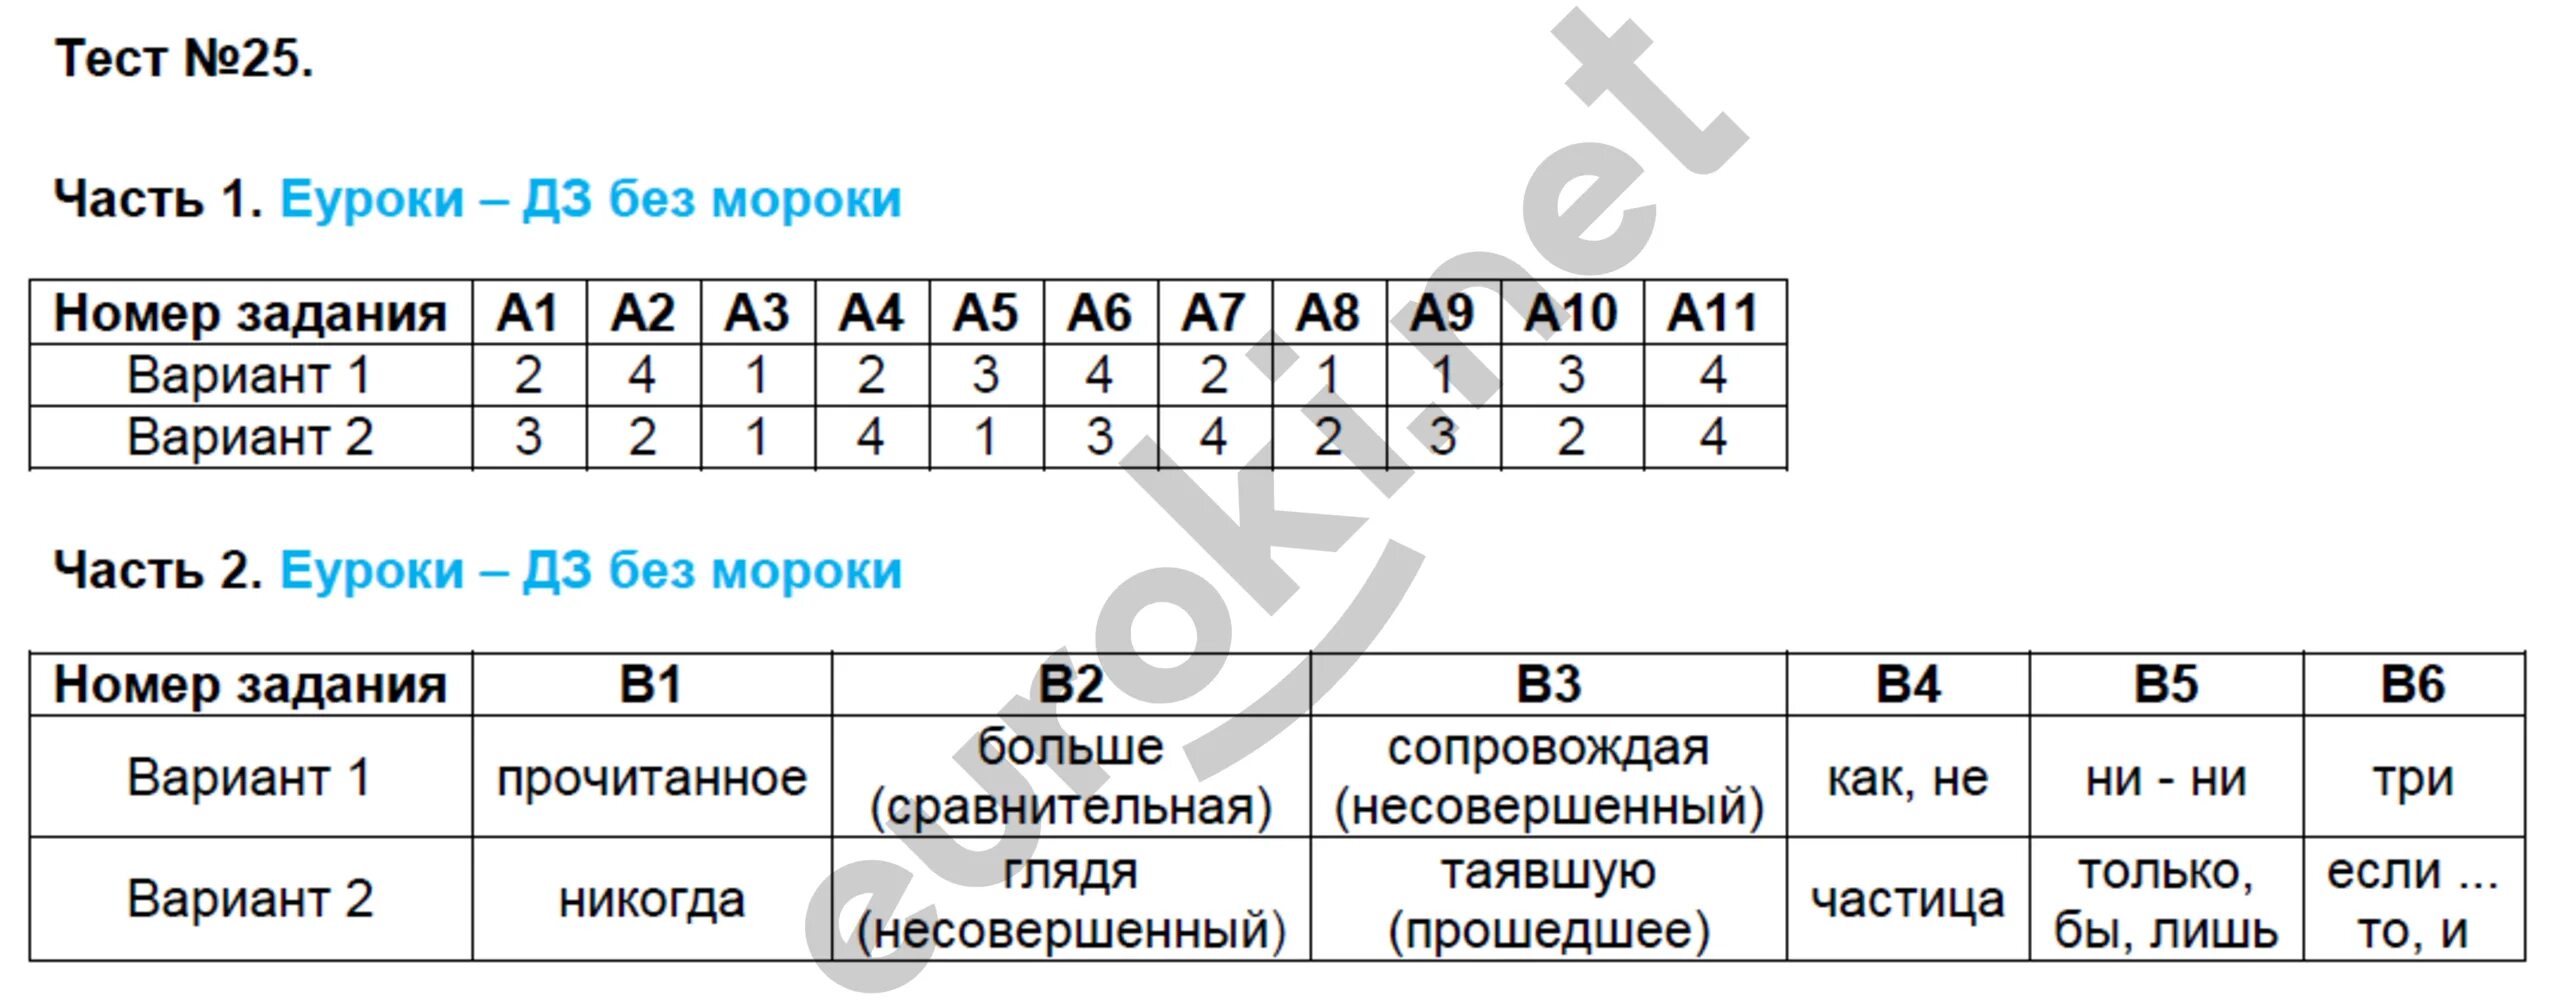 Контрольно измерительные материалы 7 класс ответы. Тесты Егорова 7 класс по русскому языку. Русский язык 7 класс тематические тесты Егорова.